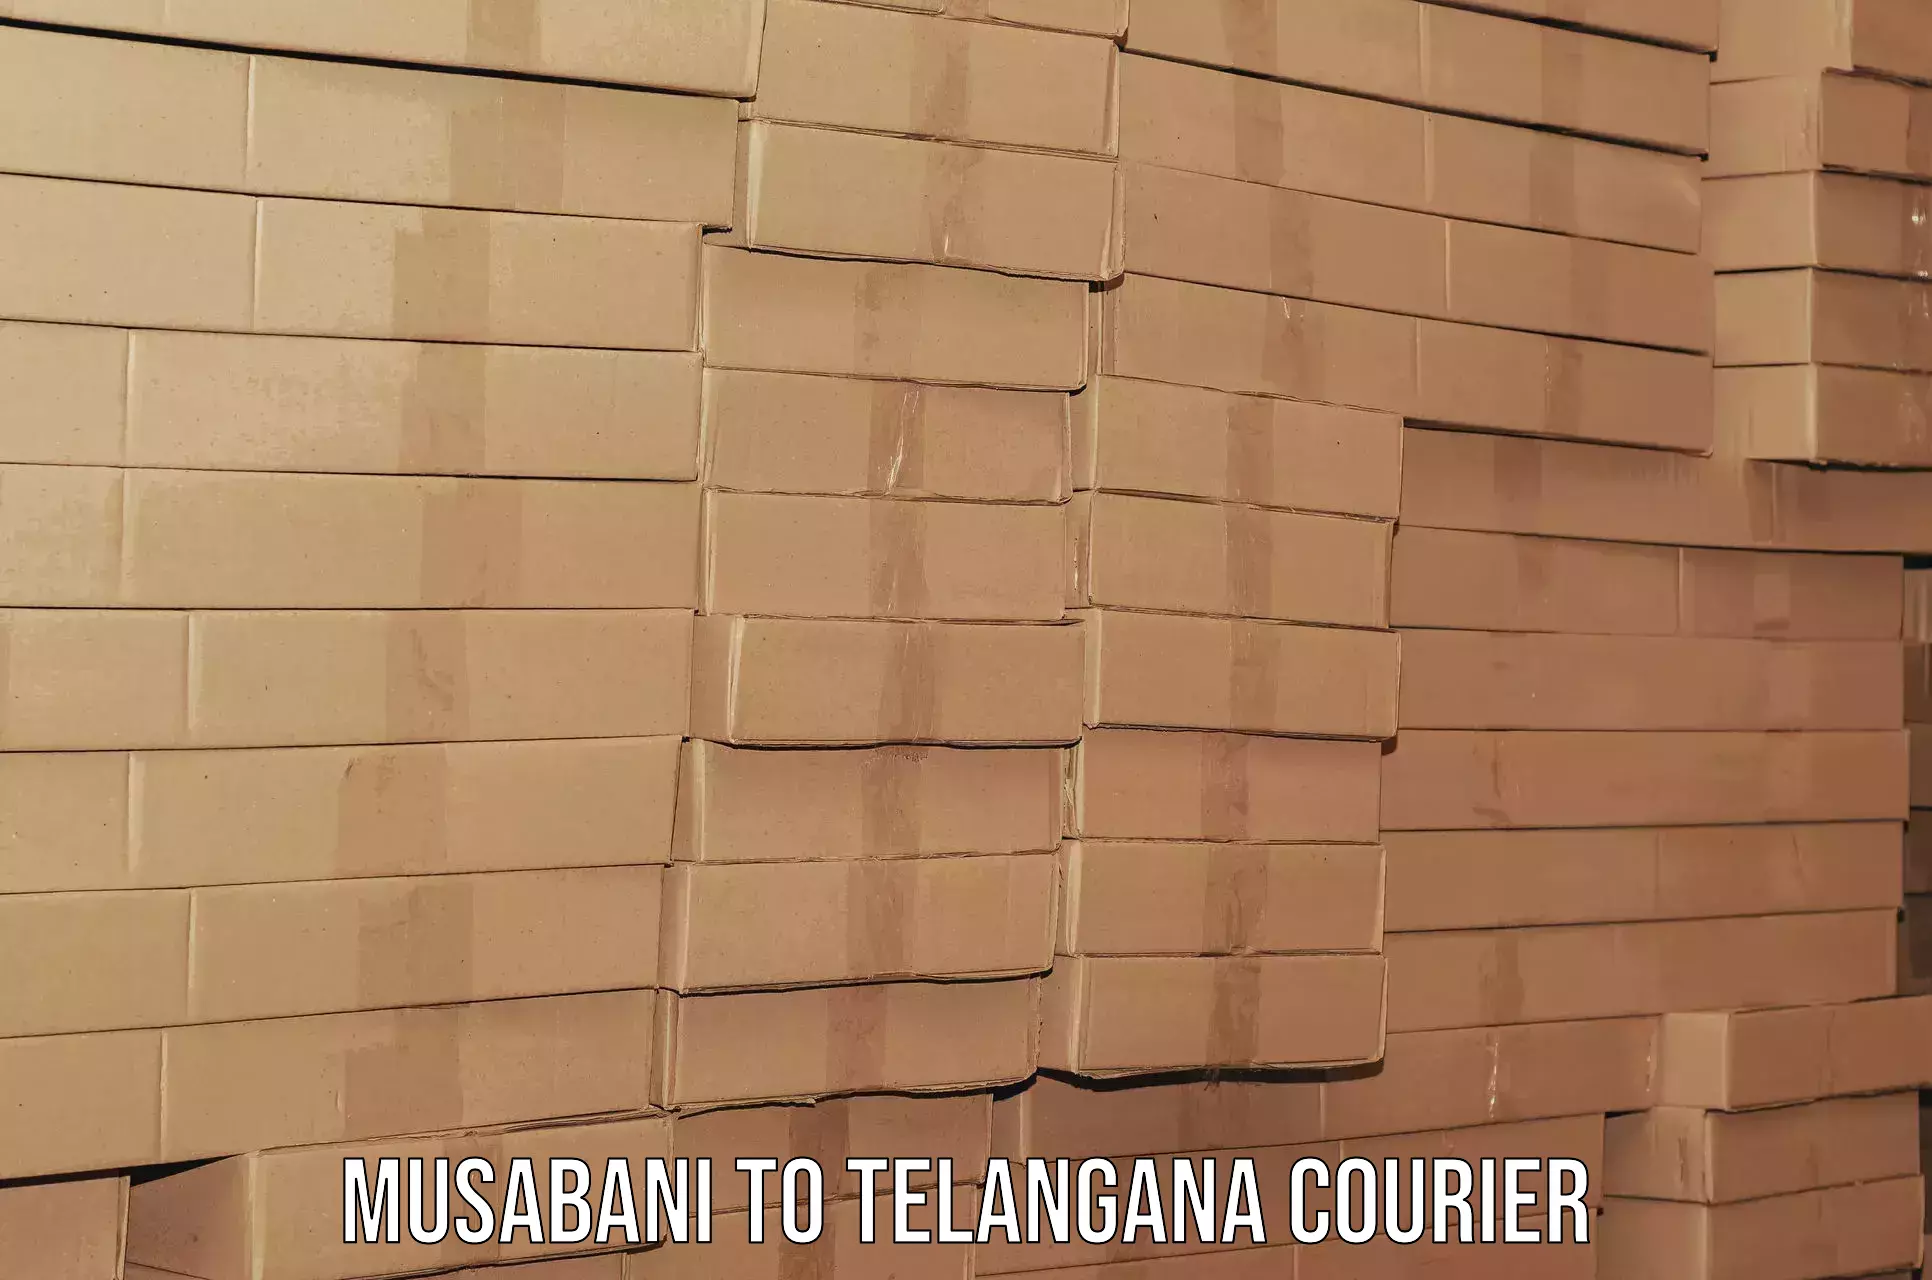 Furniture transport company Musabani to Manthani